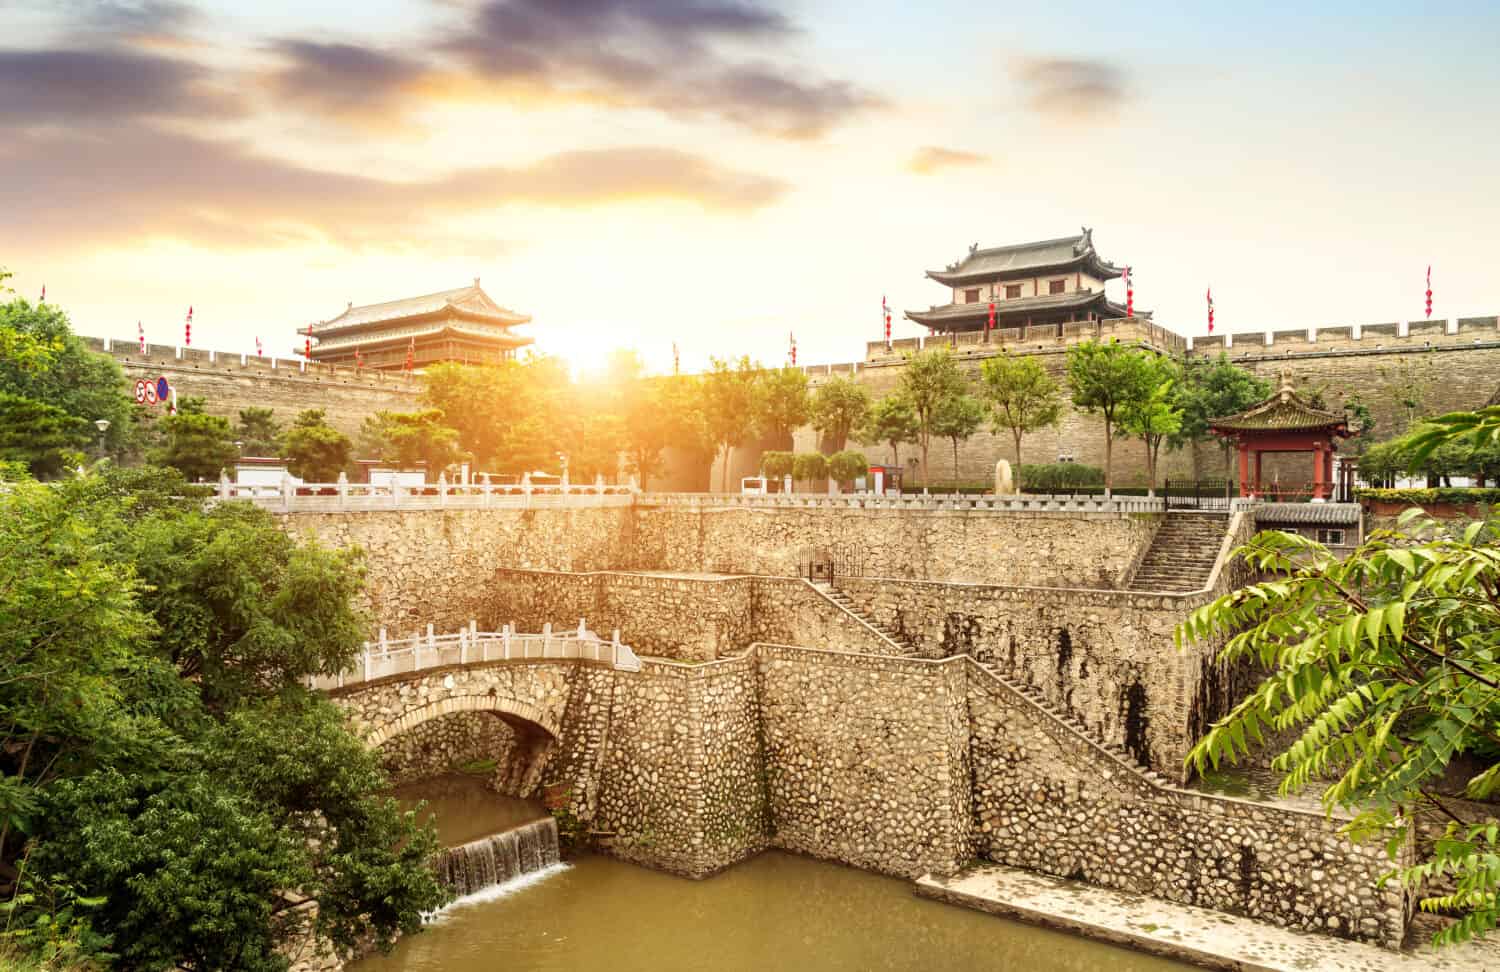 Mura e fossato antichi della città di Xi'an, Cina Shaanxi.